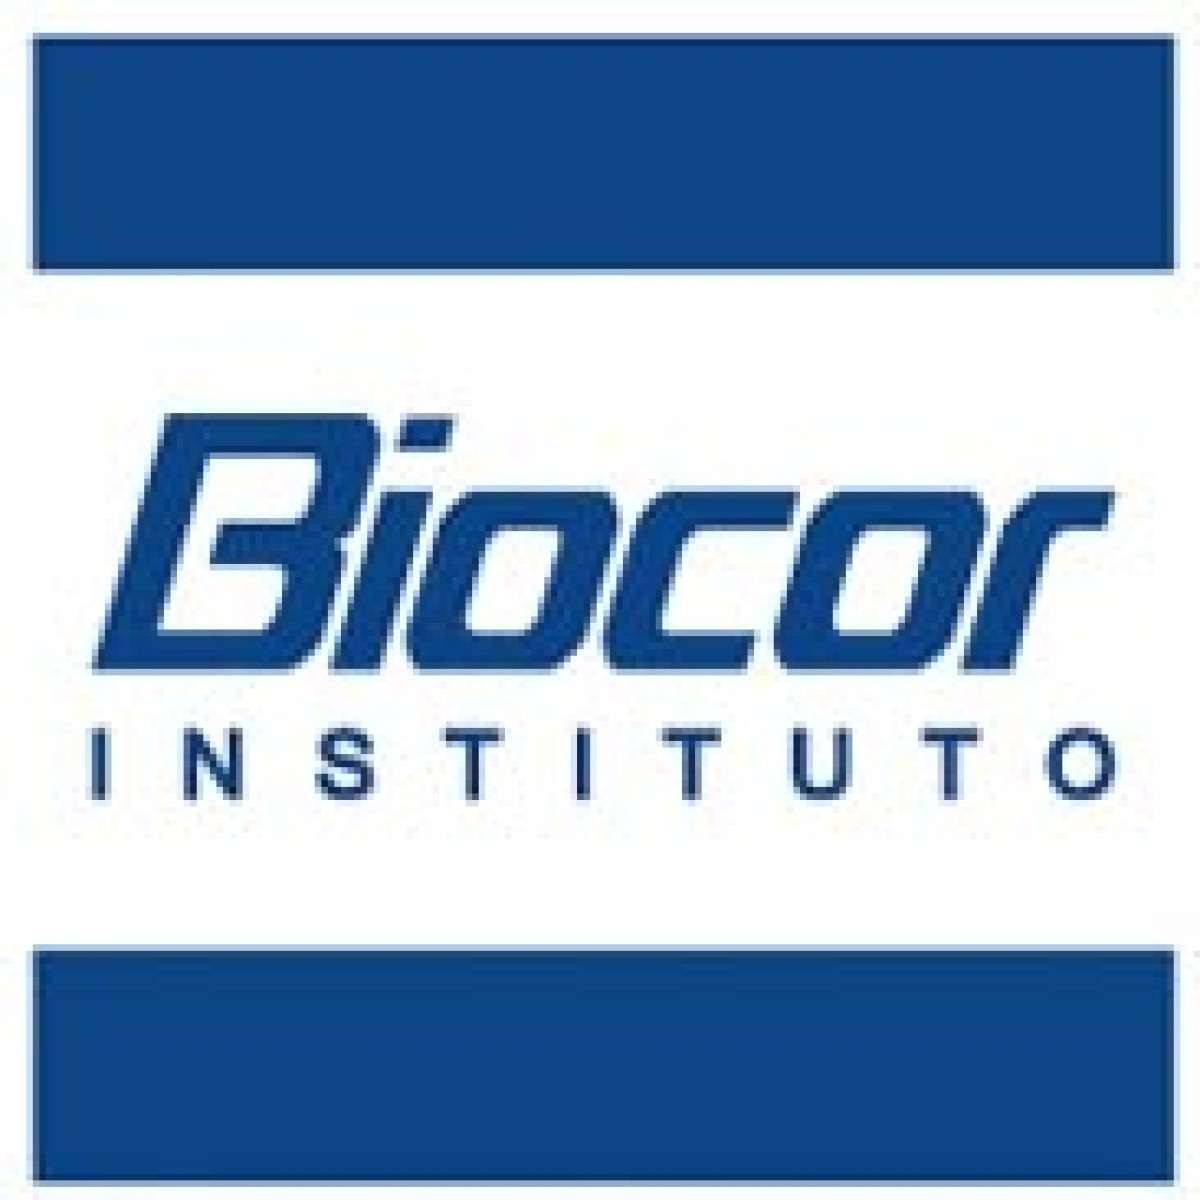 Biocor Instituto